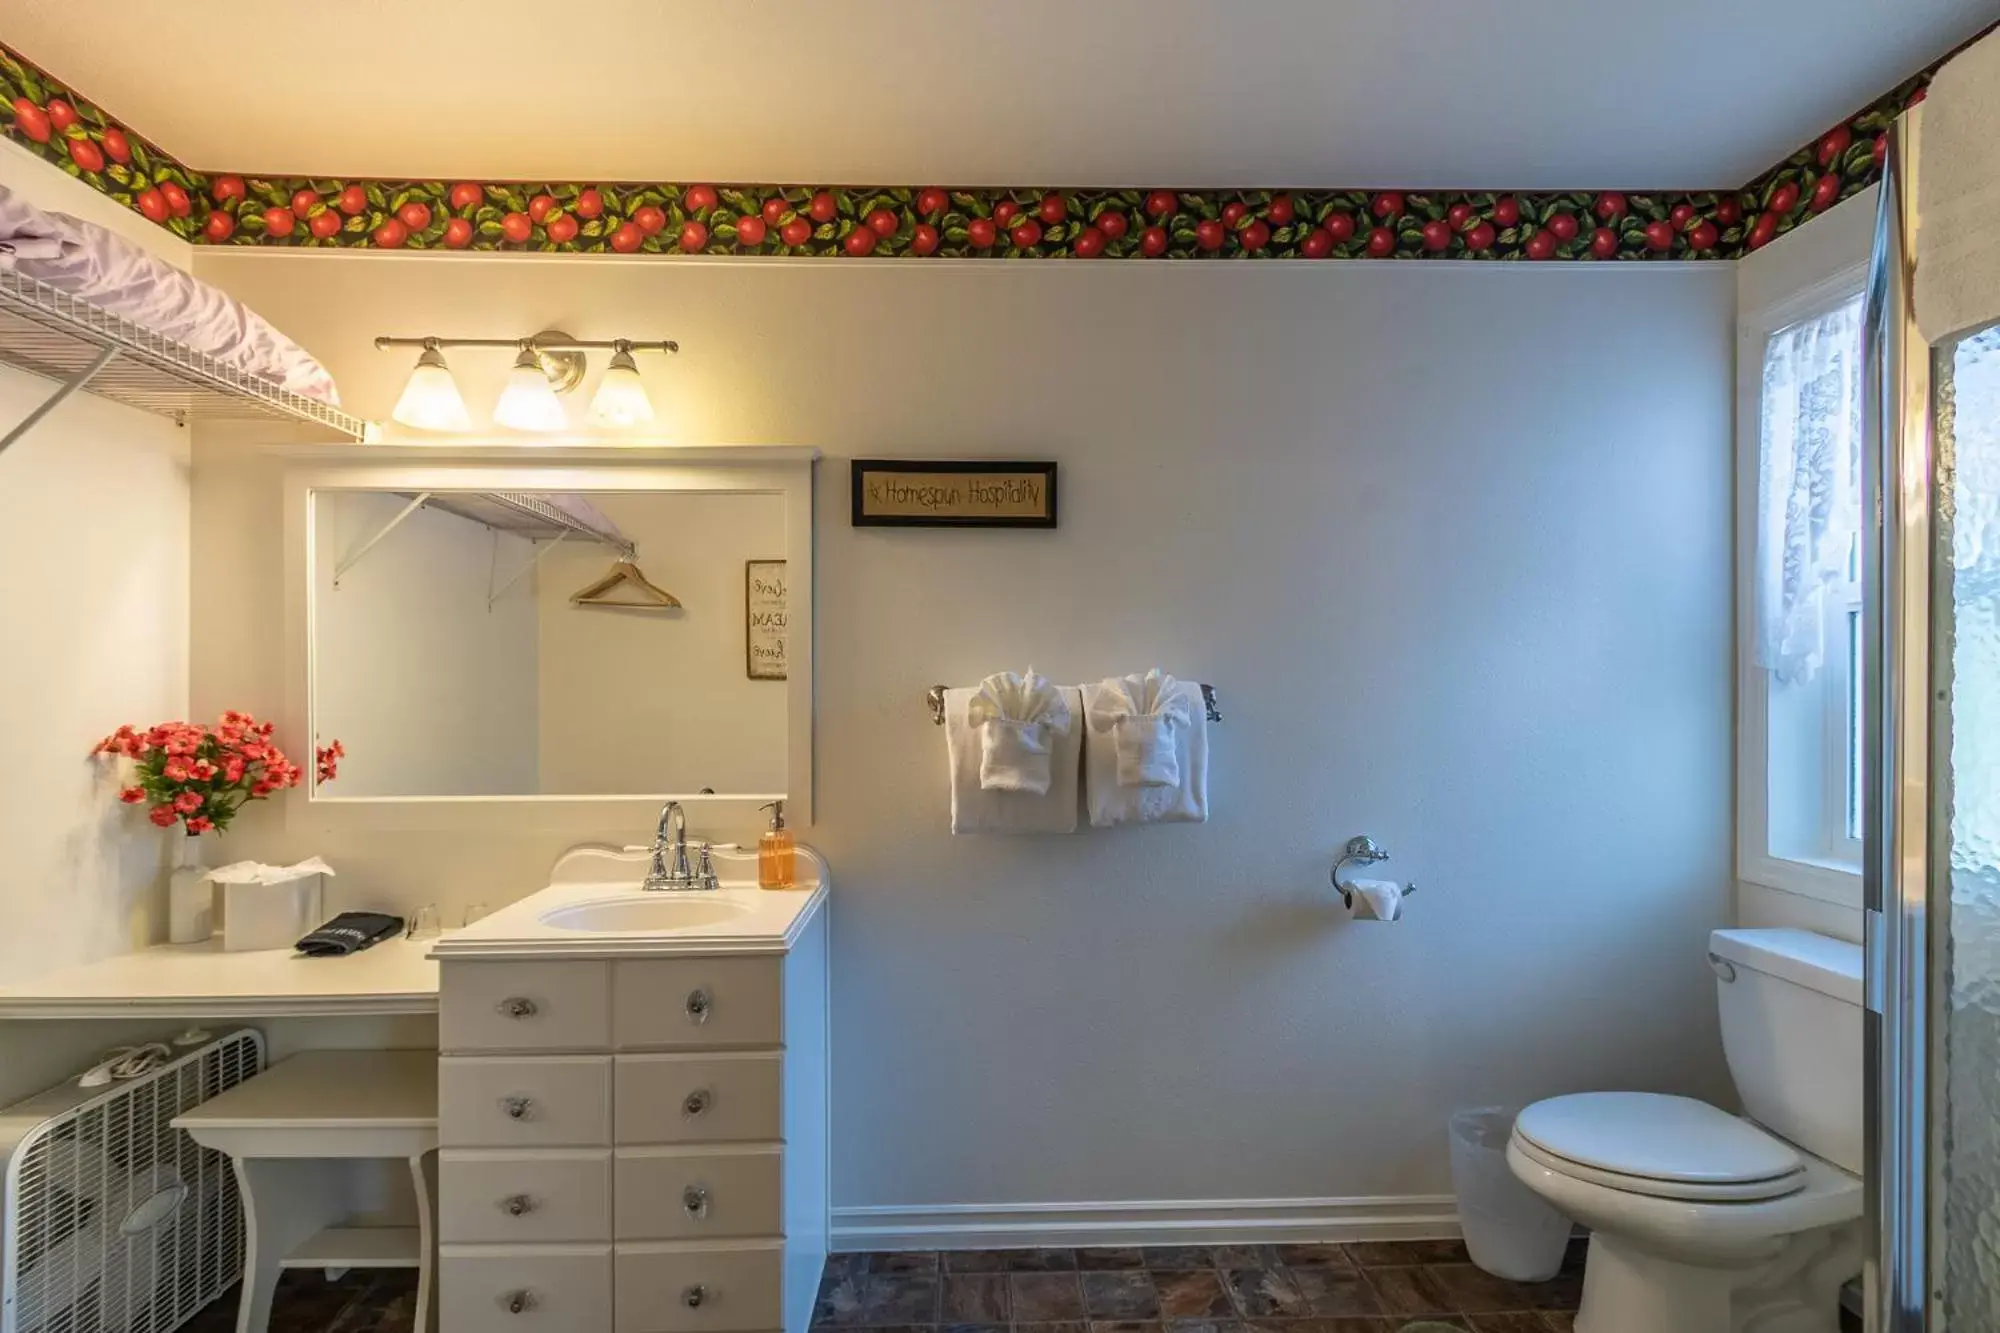 Bathroom in Apples Bed and Breakfast Inn